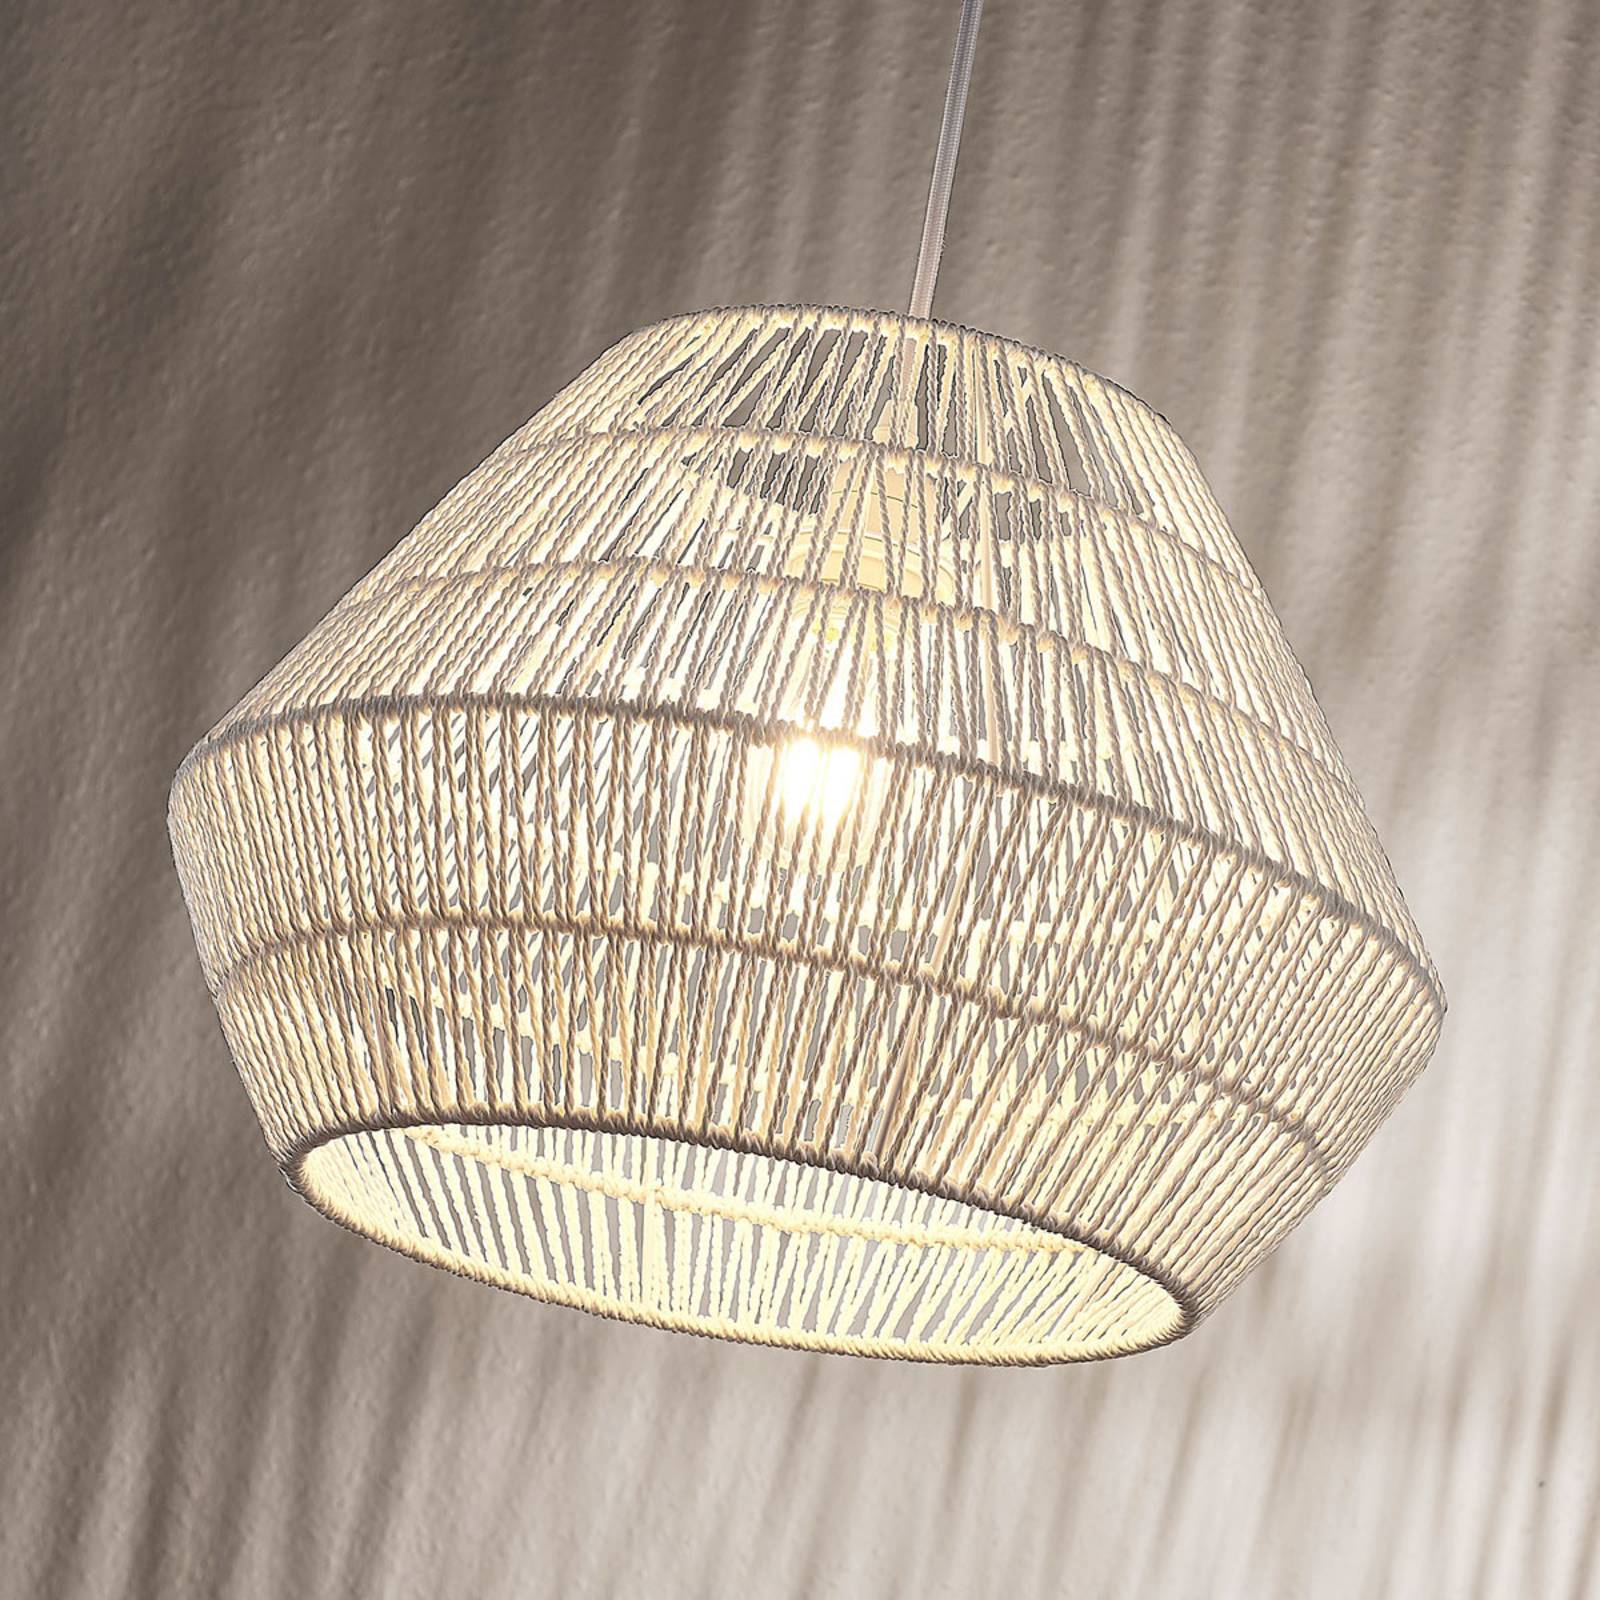 Hanglamp Ottavio van papieren vlechtwerk, wit